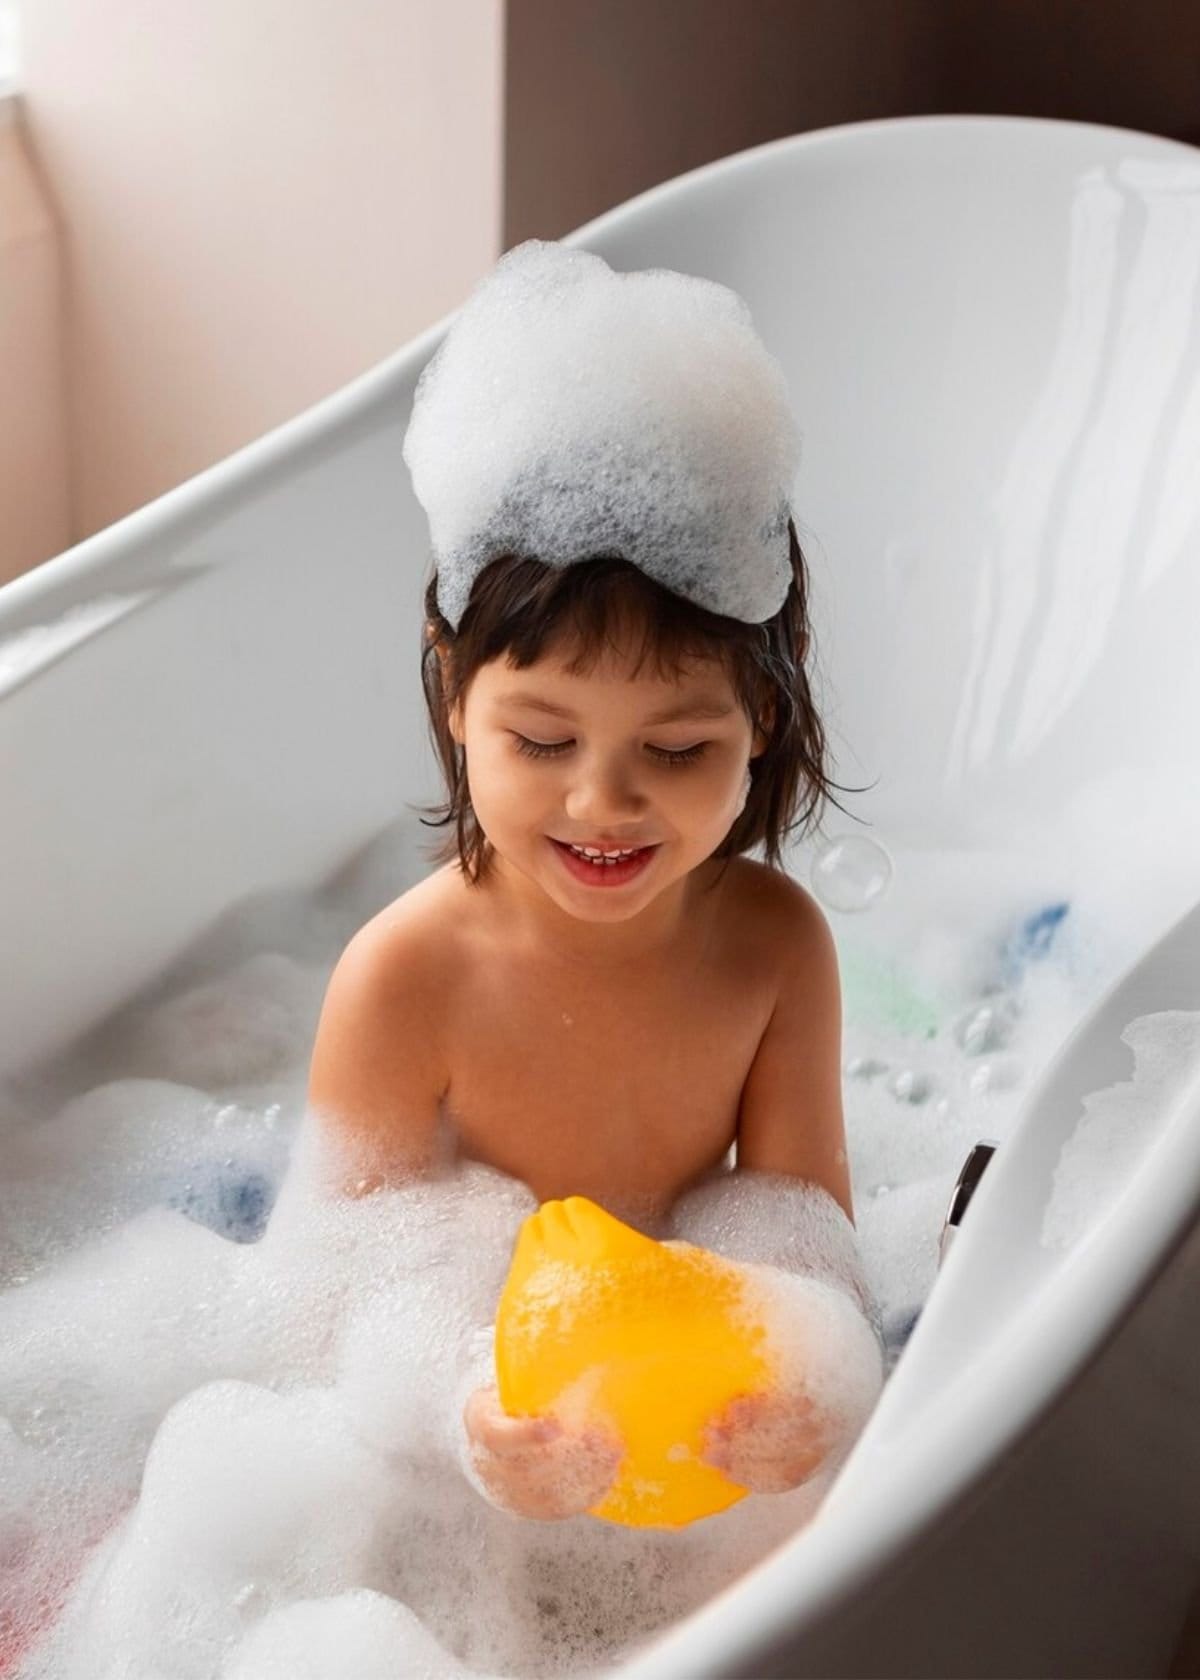 How Toxic Is Kids Shampoo